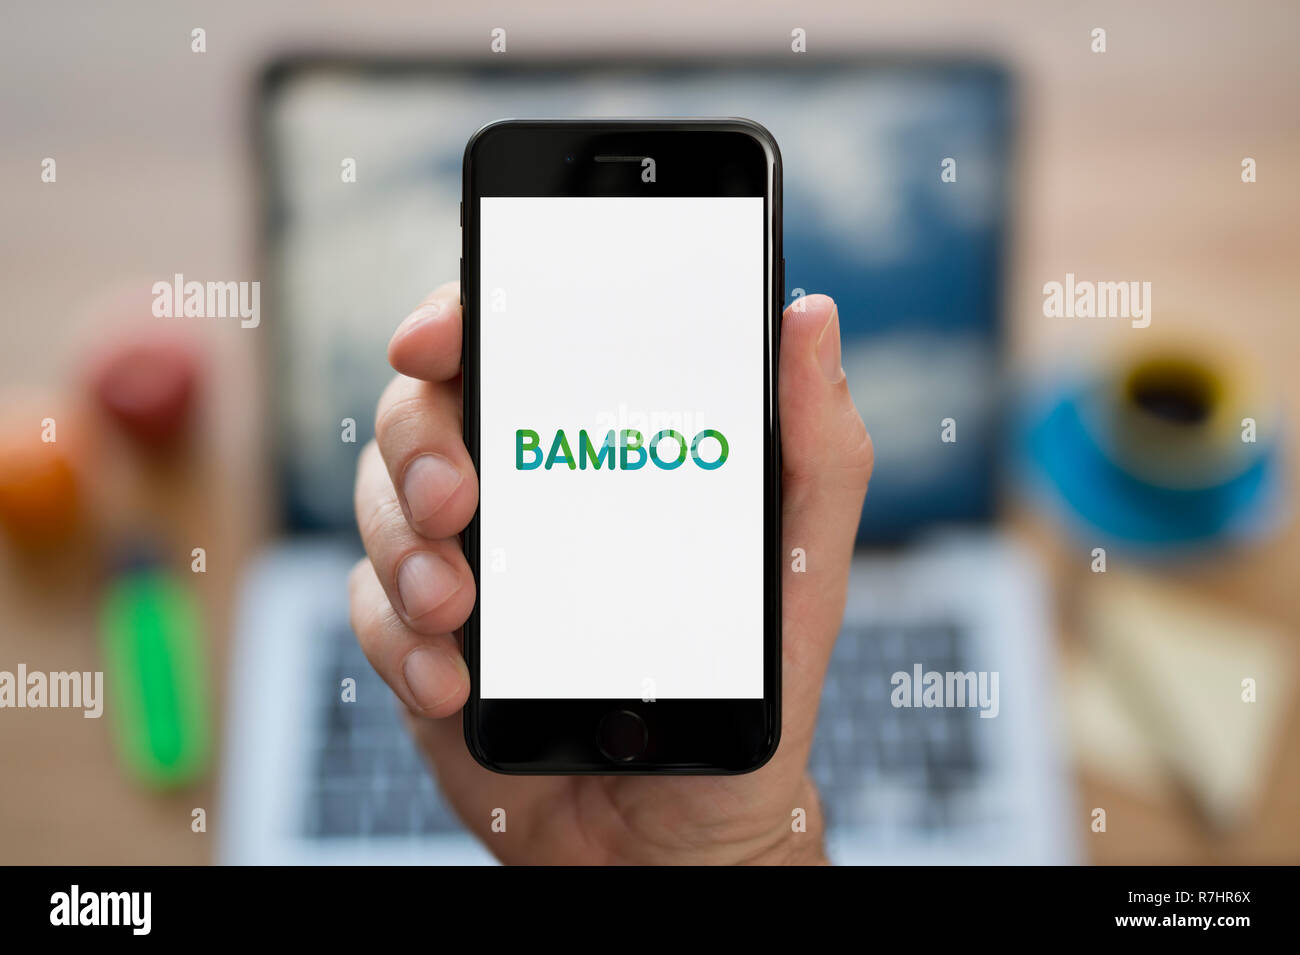 Un hombre mira el iPhone que muestra el logotipo de bambú (uso Editorial solamente). Foto de stock